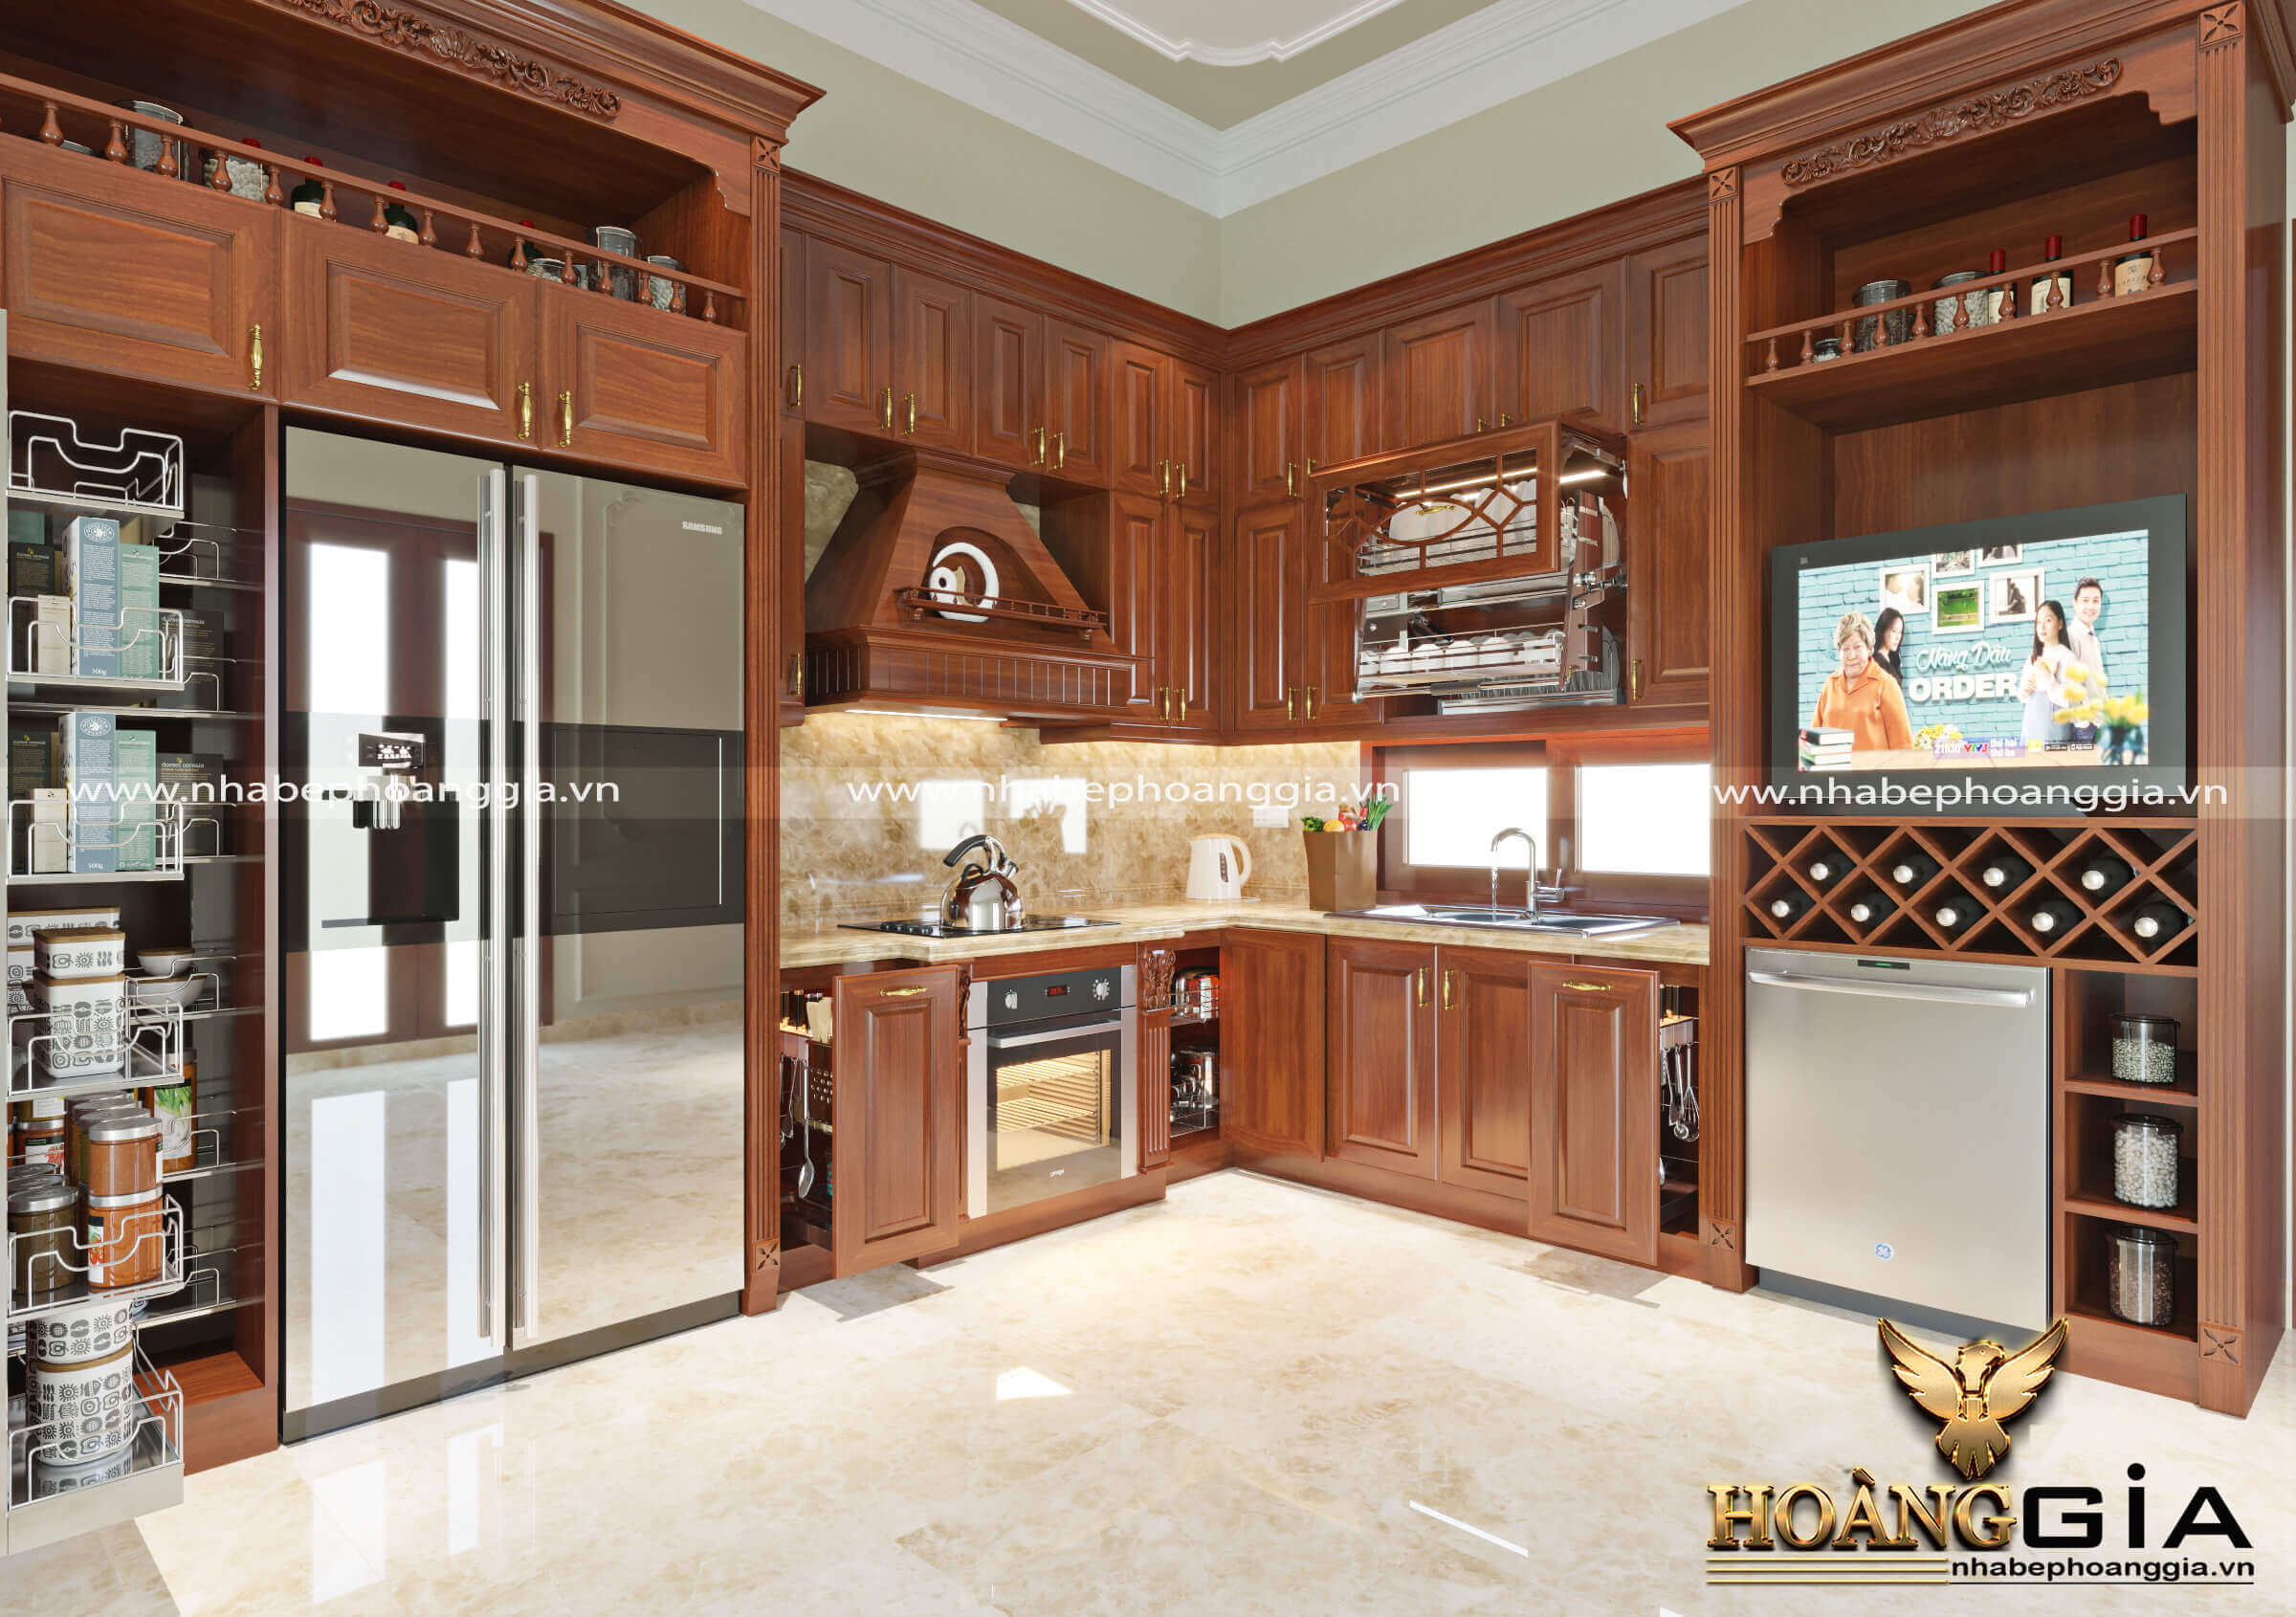 Thiết kế tủ bếp đẹp gỗ hương cao cấp - Với chất liệu gỗ hương cao cấp, các thiết kế tủ bếp đẹp đem lại cảm giác sang trọng, hiện đại cho căn bếp của bạn. Bạn có thể thỏa sức sáng tạo với các kiểu dáng, màu sắc, tạo nên một không gian bếp tinh tế và đẳng cấp. Hãy để chúng tôi giúp bạn tạo nên căn bếp hoàn hảo nhất cho gia đình của bạn.